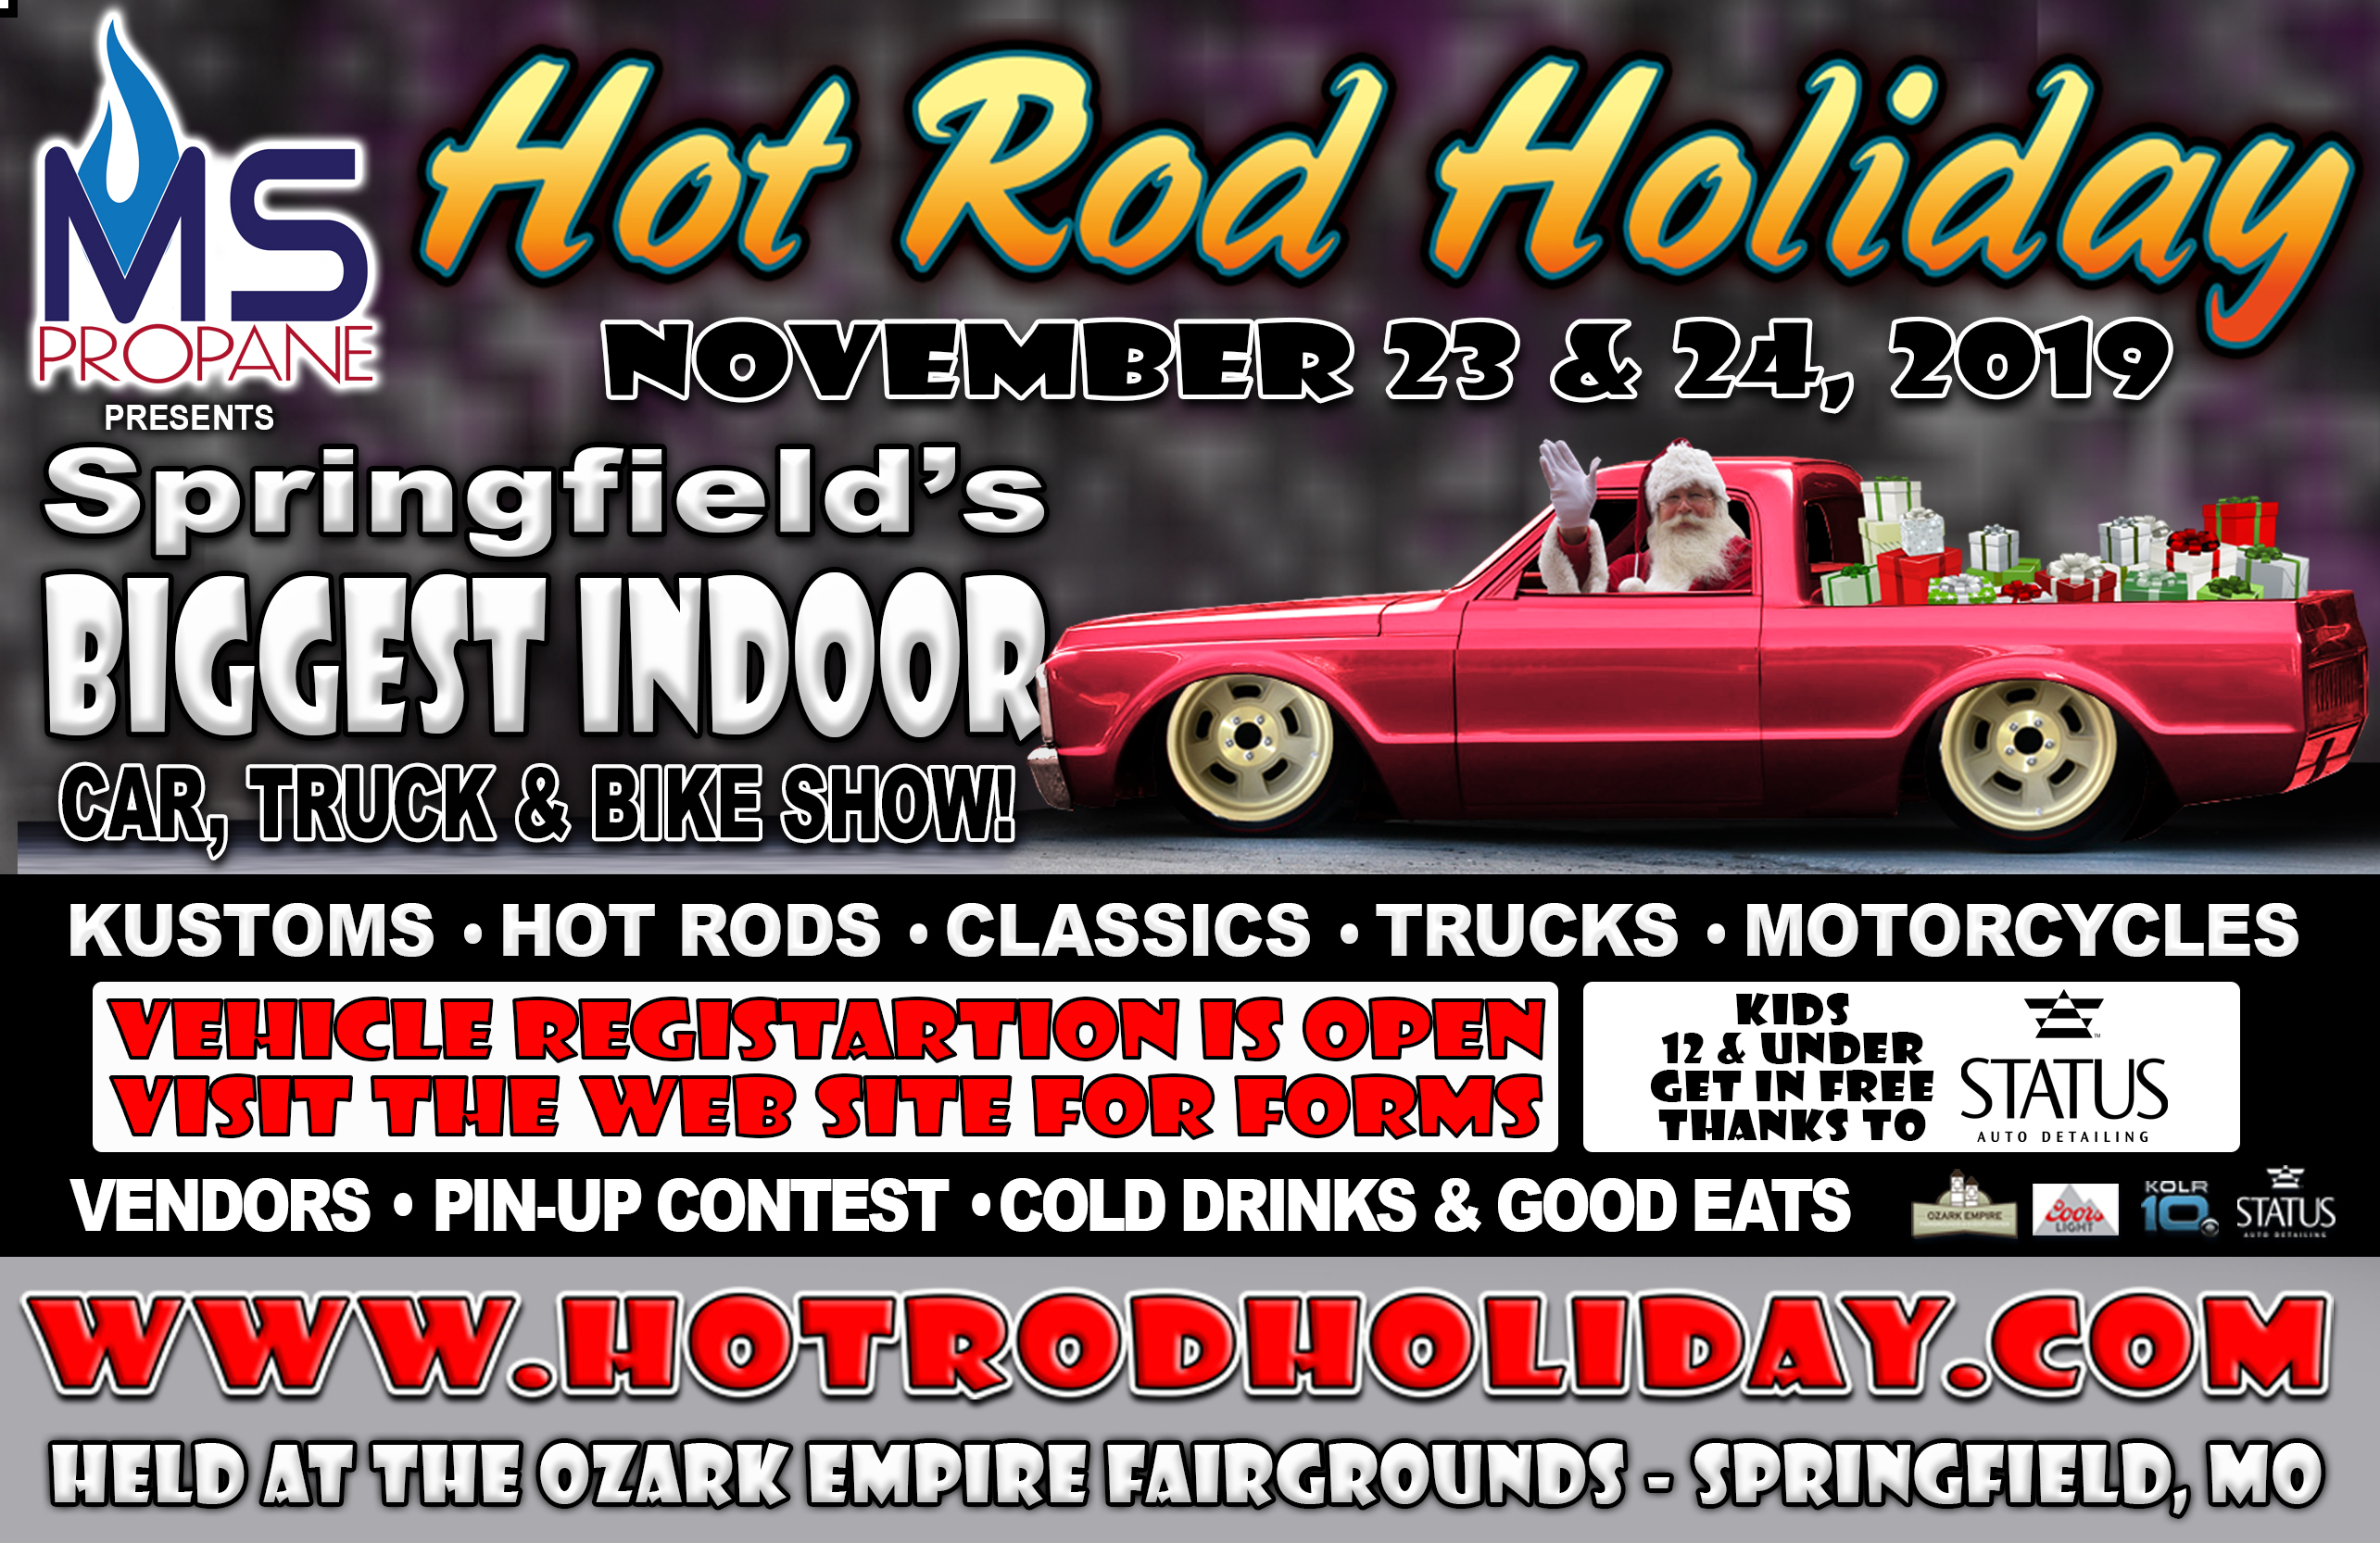 Hotrod Holiday November